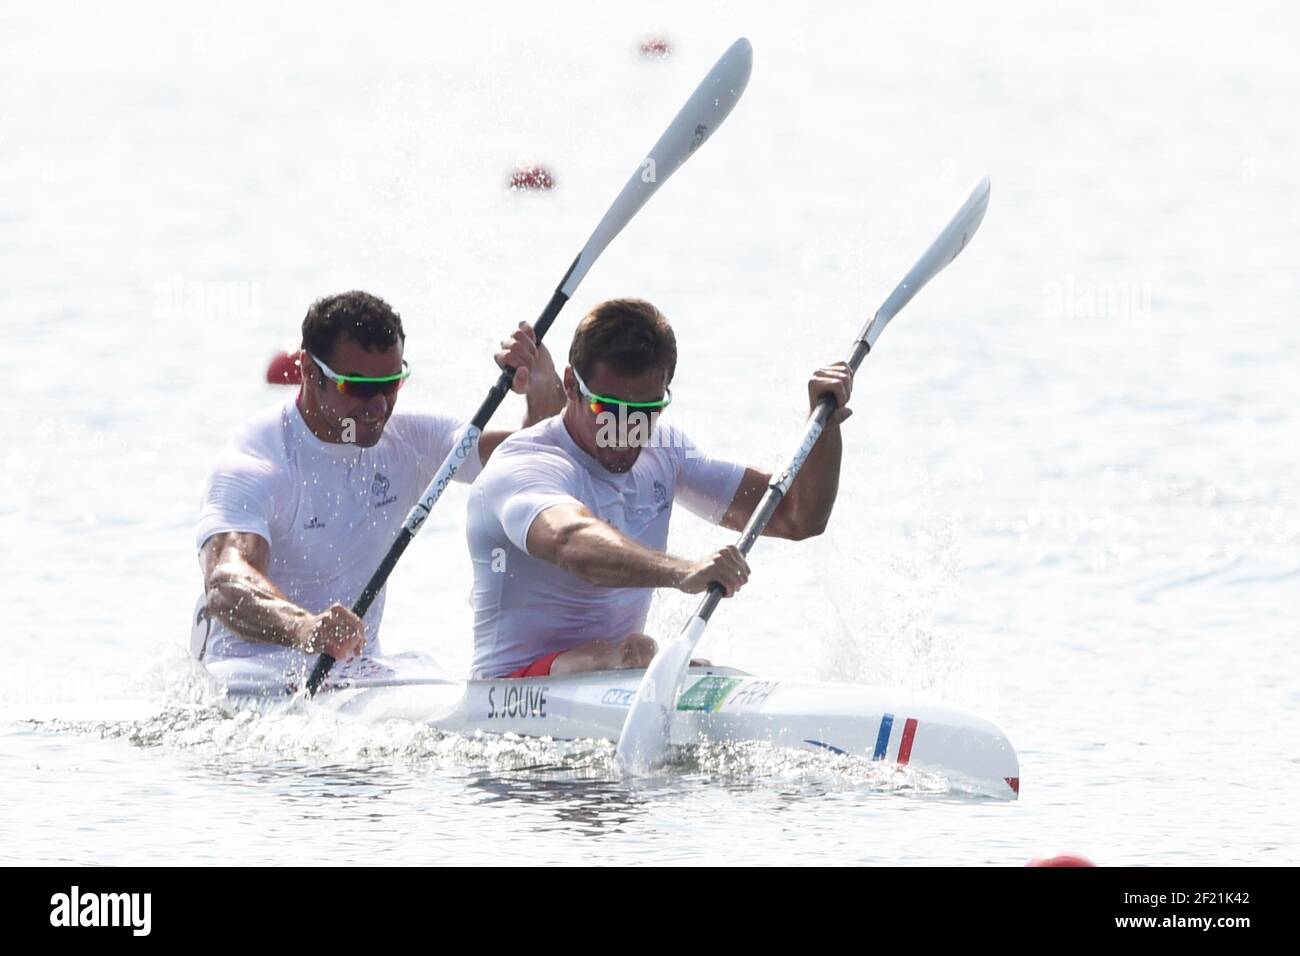 Die Franzosen Sebastien Jouve und Maxime Beaumont treten im Kayak Men's Double 200m bei den Olympischen Spielen RIO 2016, Canoe Sprint, am 18. August 2016 in Rio, Brasilien - Foto Jean Marie Hervio / KMSP / DPPI Stockfoto